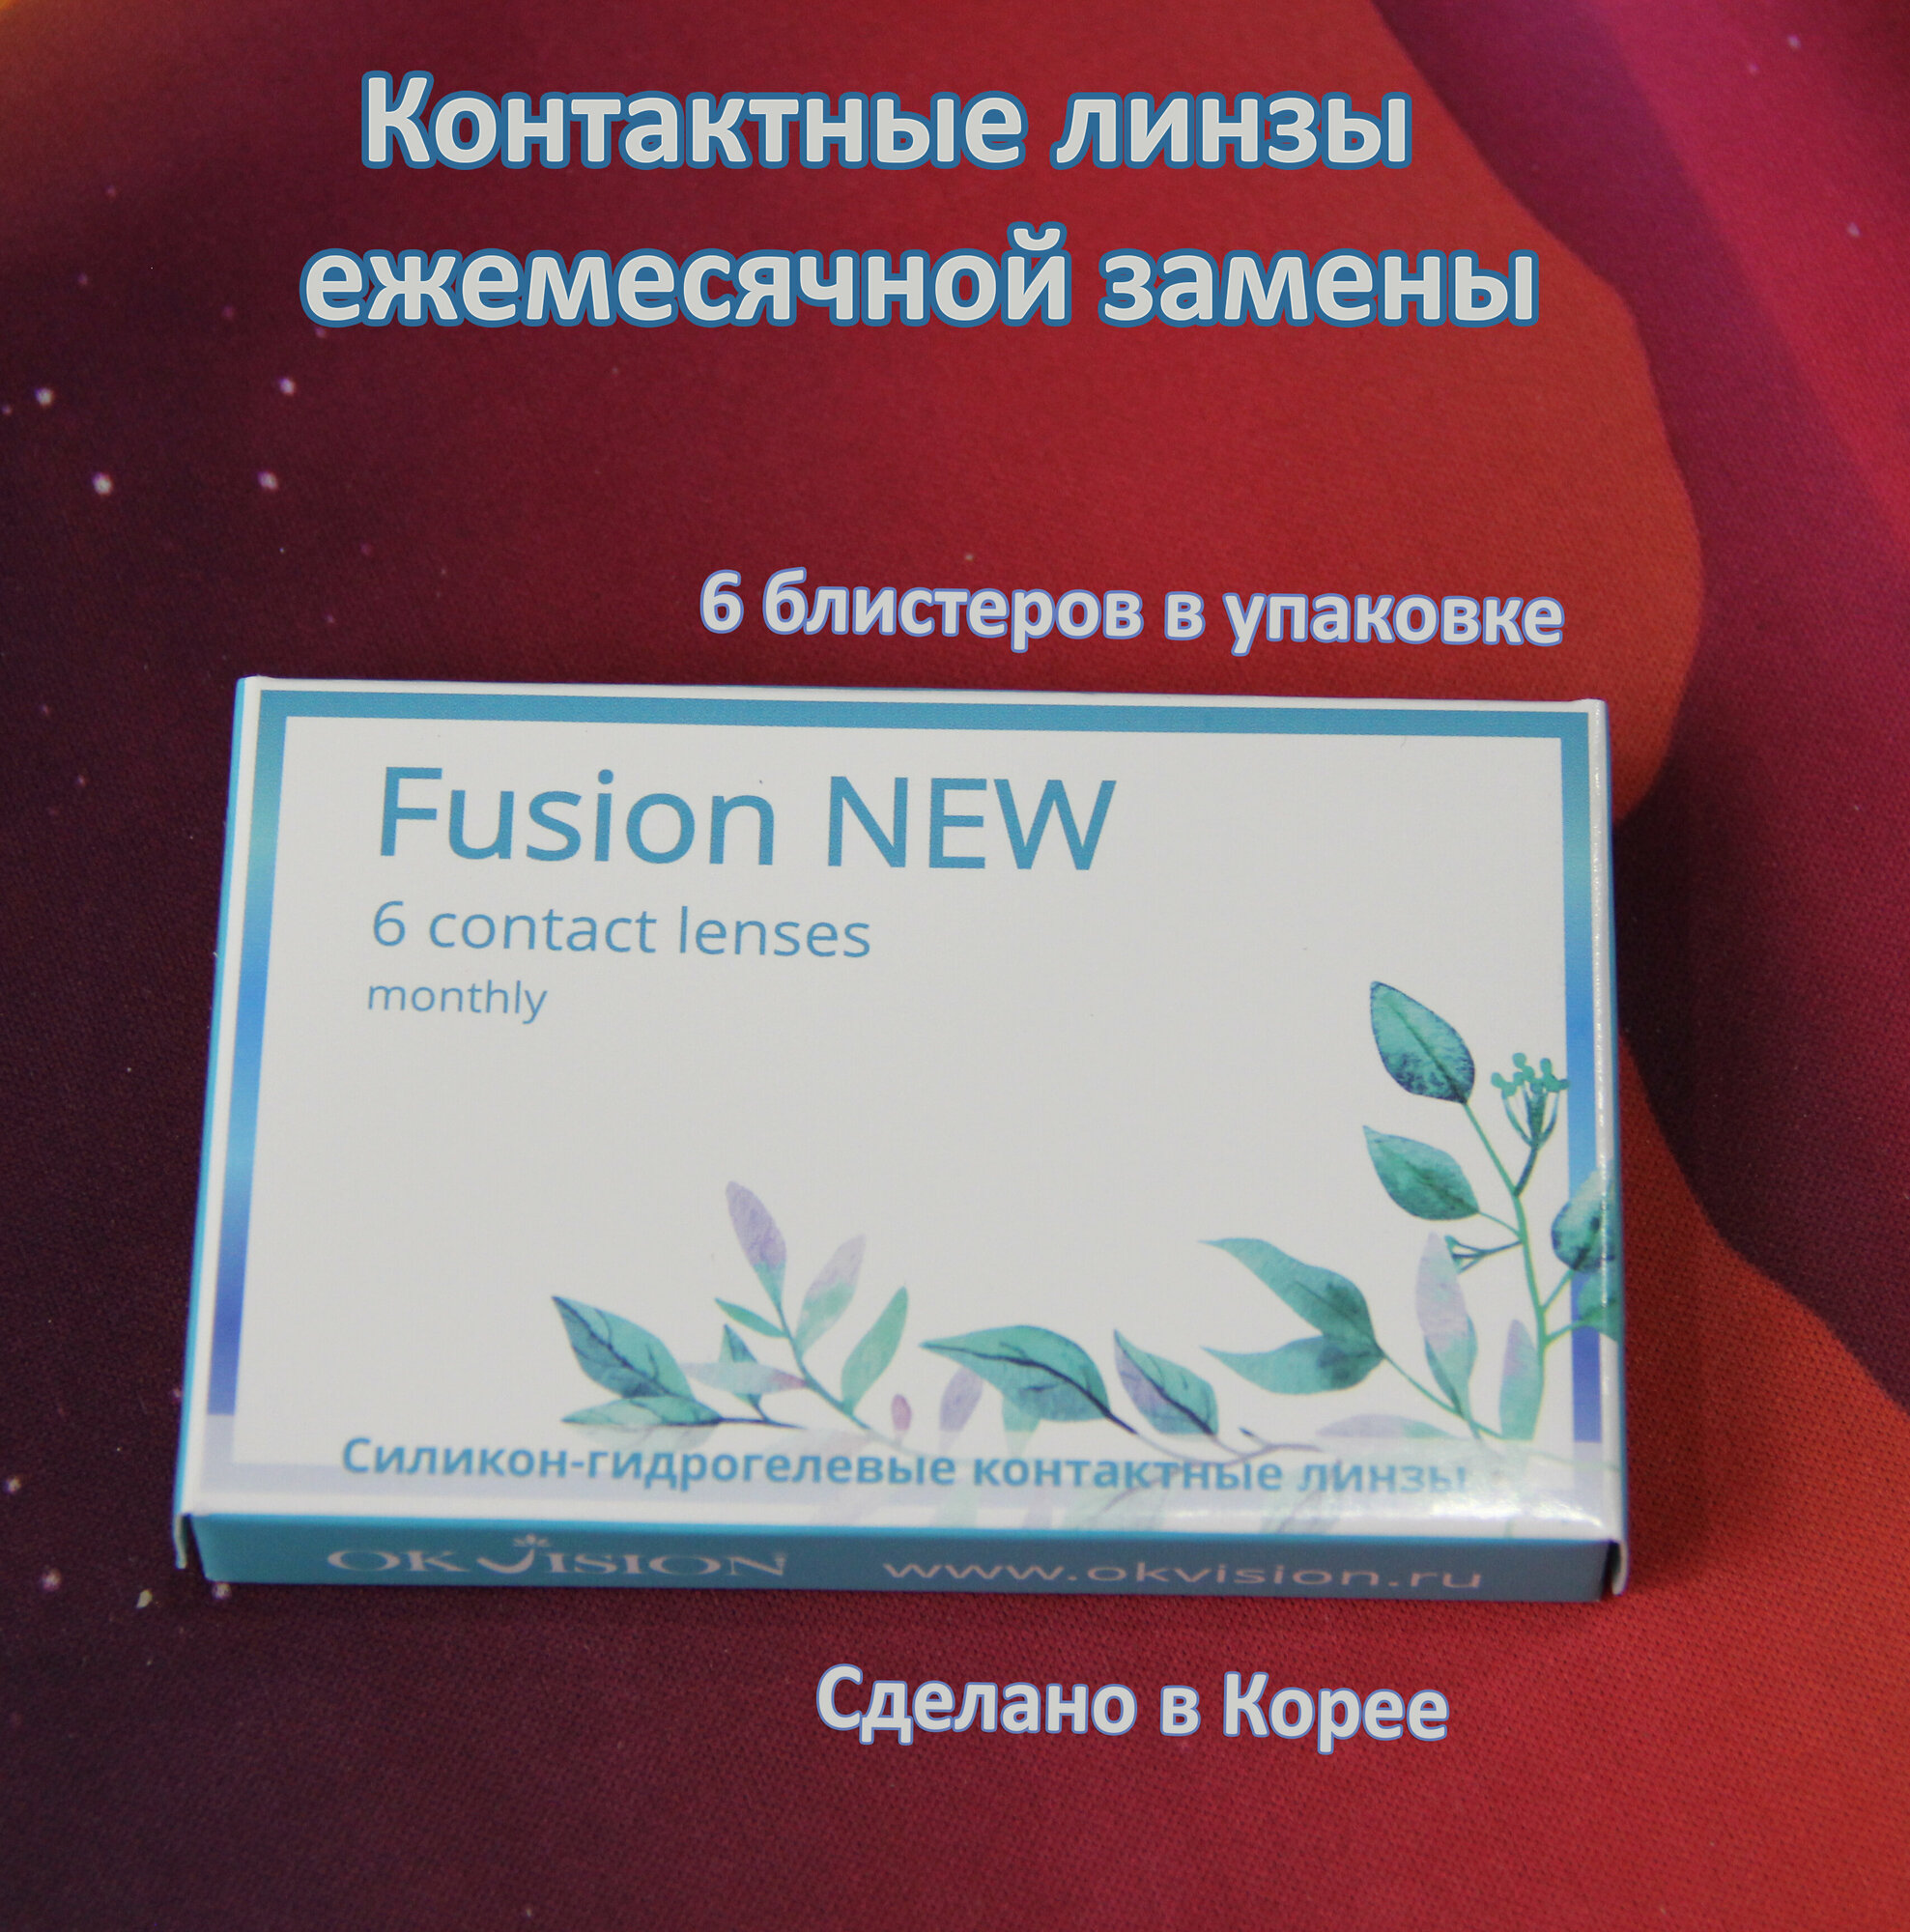 Контактные линзы OKVision Fusion New, ежемесячной замены, -2.75 D, 6 линз в упаковке